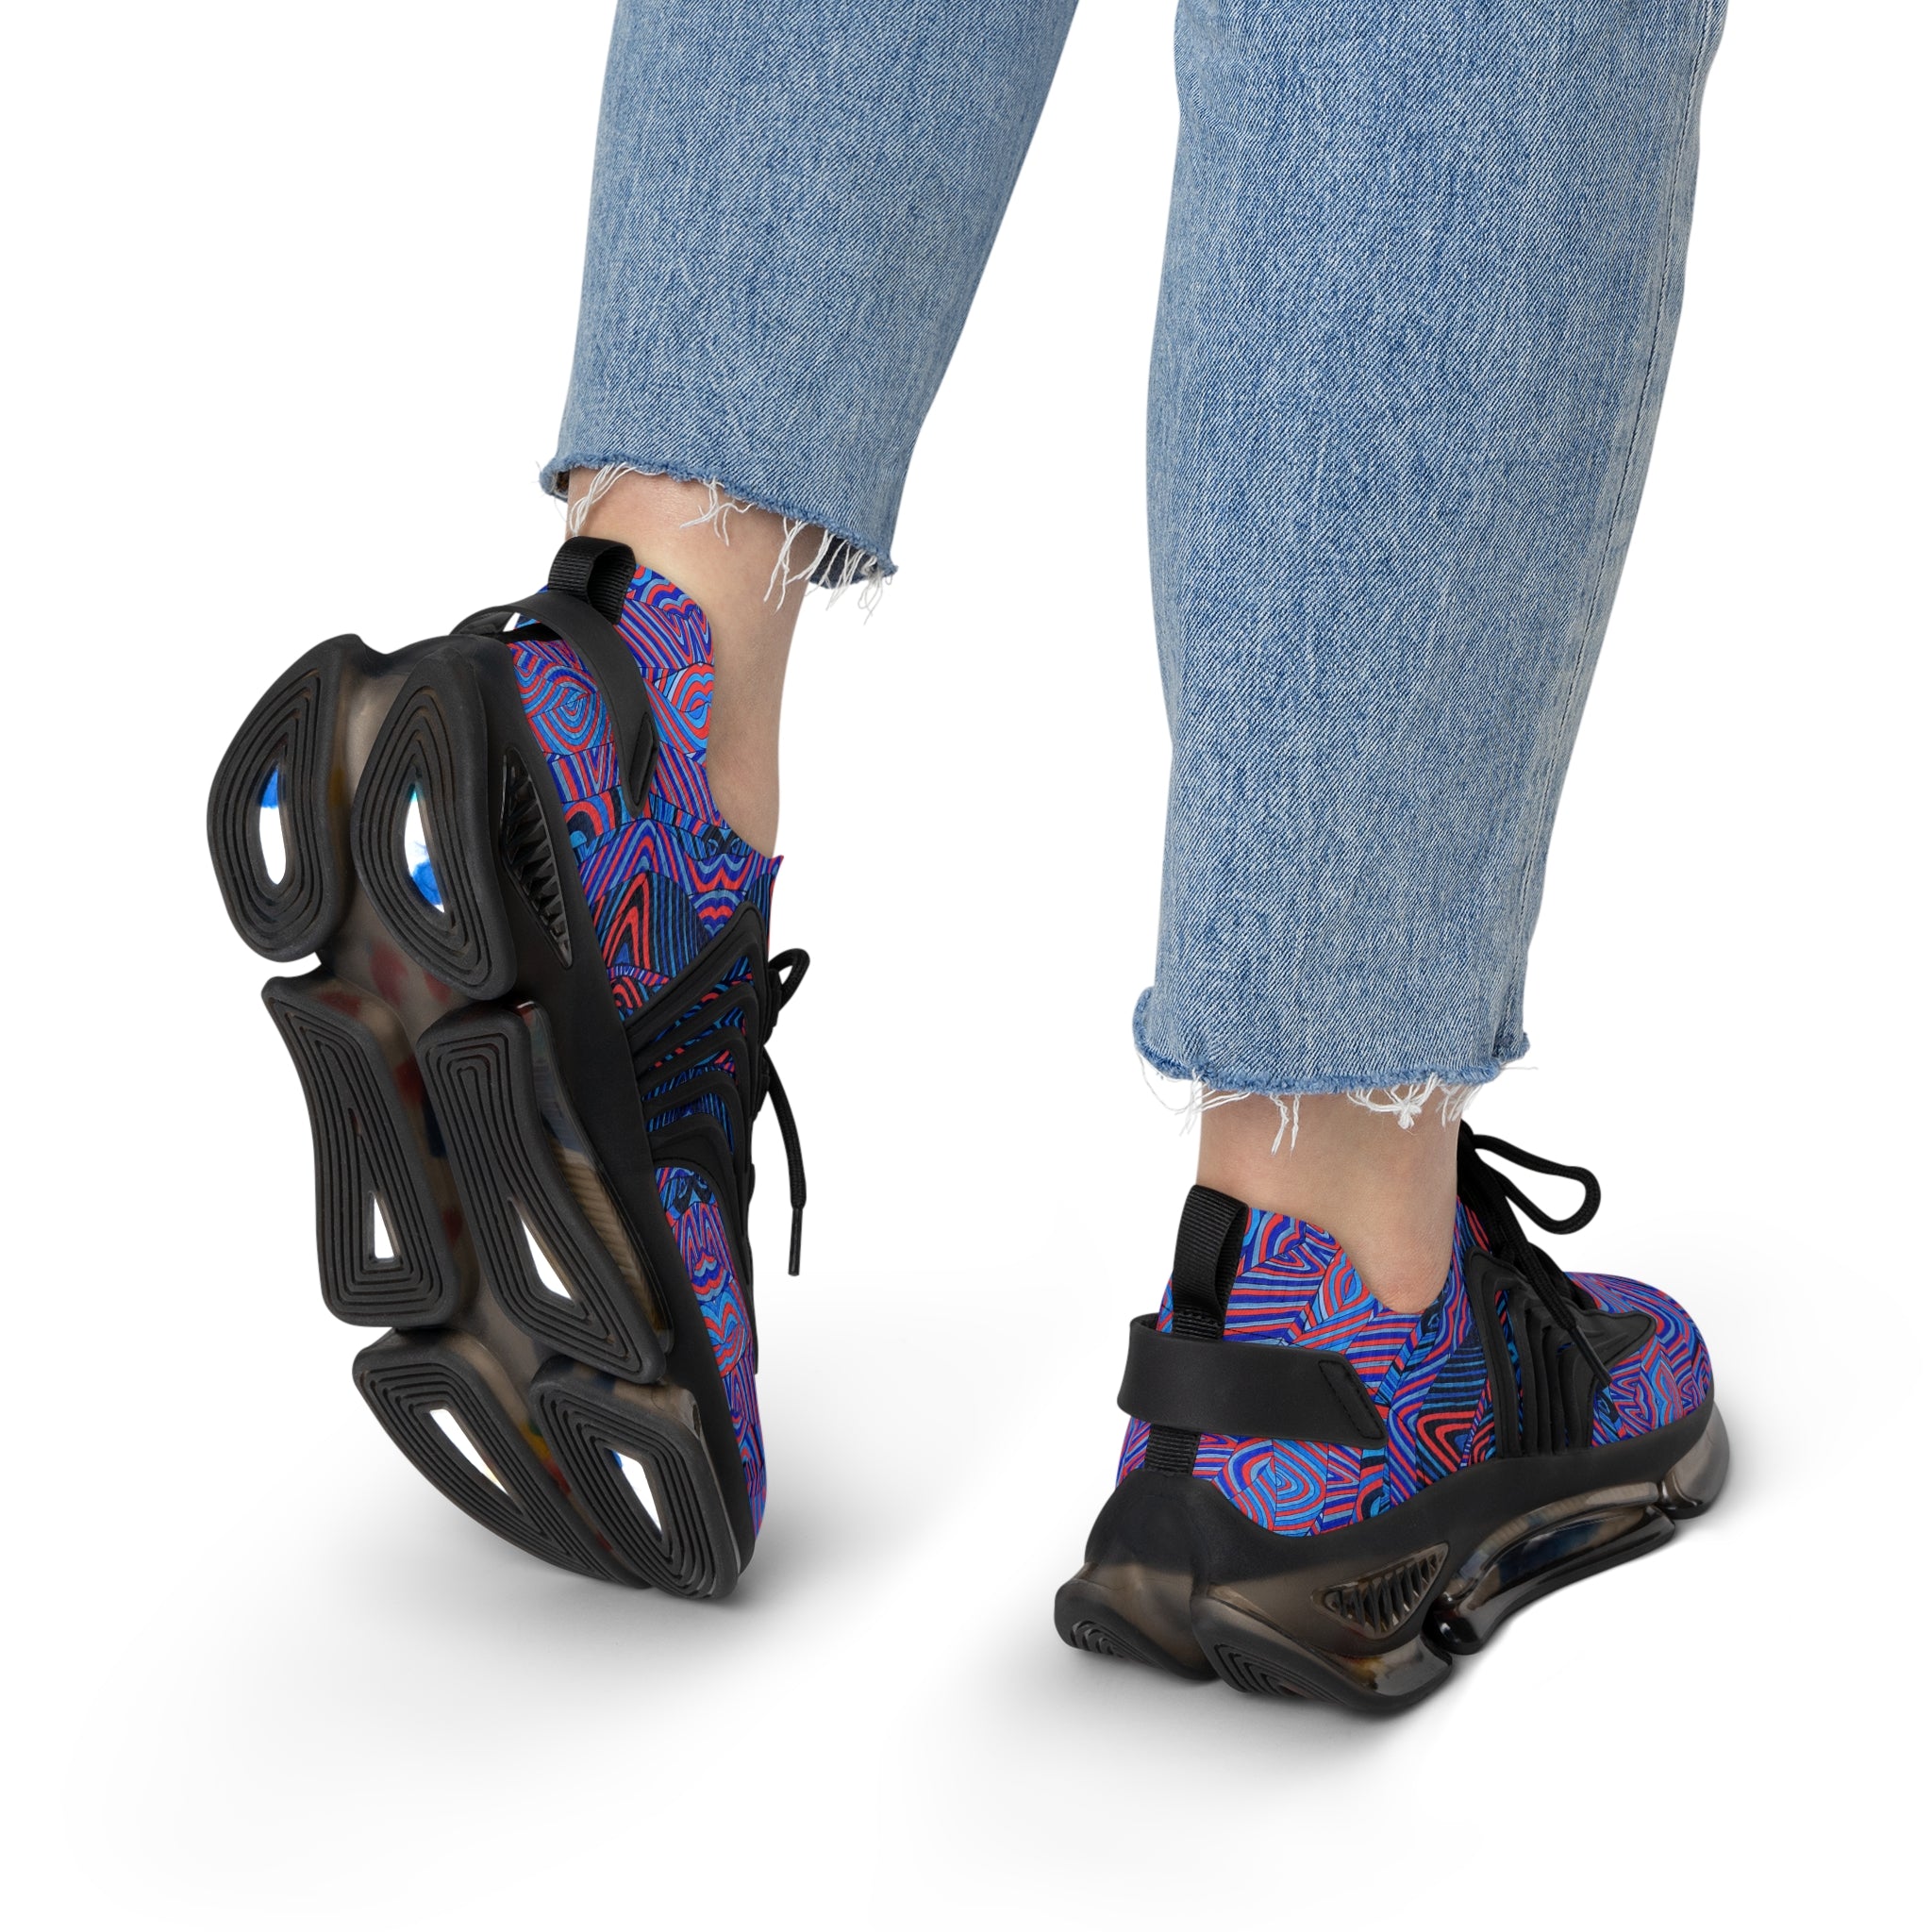 Vermillion Sonic OTT Women's Mesh Knit Sneakers